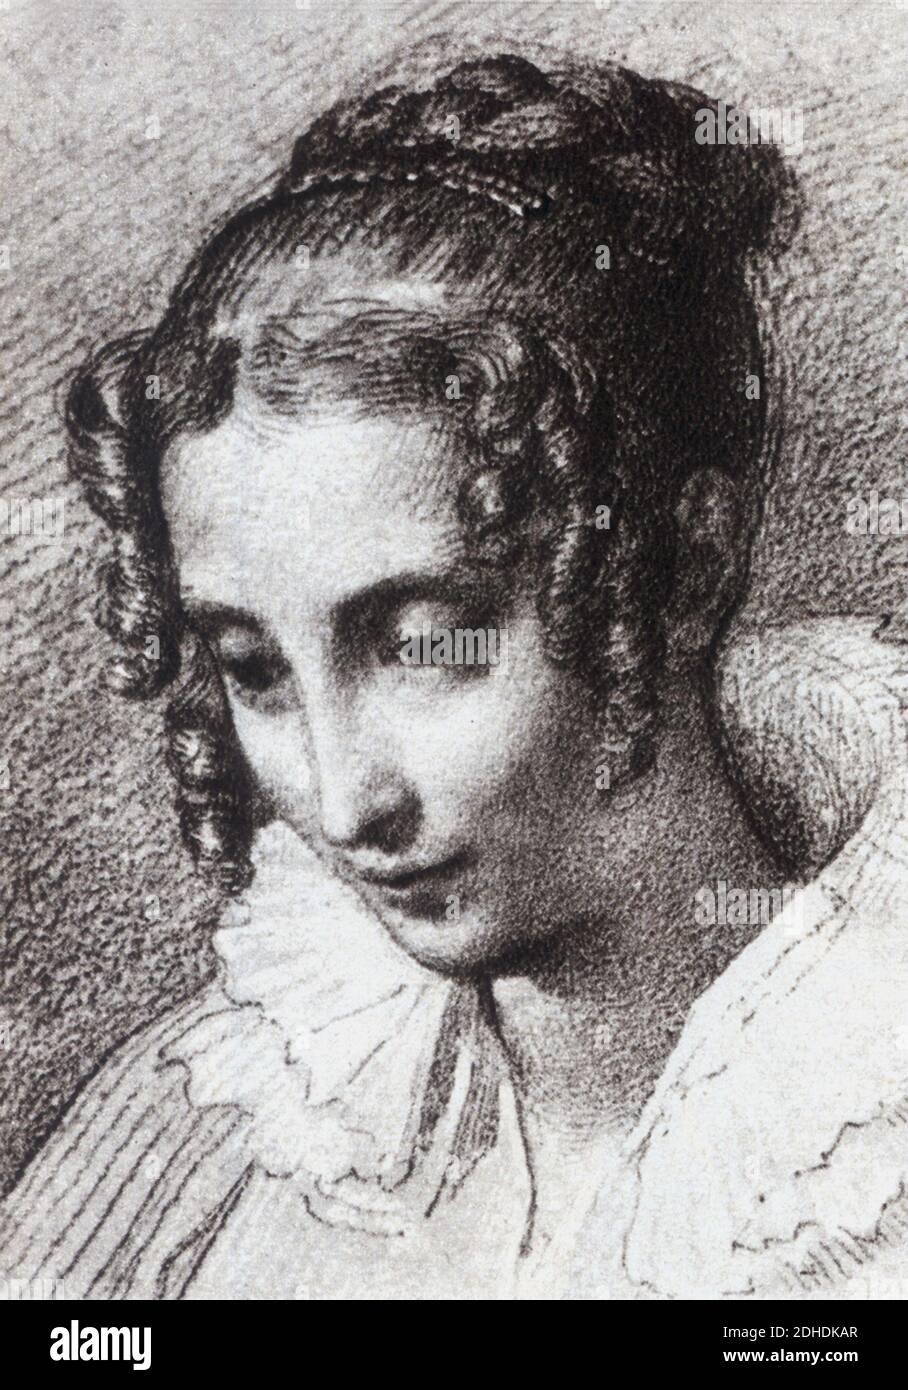 Die Gräfin TERESA BORRI STAMPA ( 1807 - 1861 ) , die 2. Frau ( 1837 ) der berühmtesten italienischen Schriftsteller ALESSANDRO MANZONI ( 1785 - 1873 ) , Autor des Buches " I Promessi Sposi " ( 1827 - 1842 ) - SCRITTORE - LETTERATO - LETTERATURA - LITERATUR - Portrait - ritratto - coletto - Kragen - boccoli - Locken ---- Archivio GBB Stockfoto